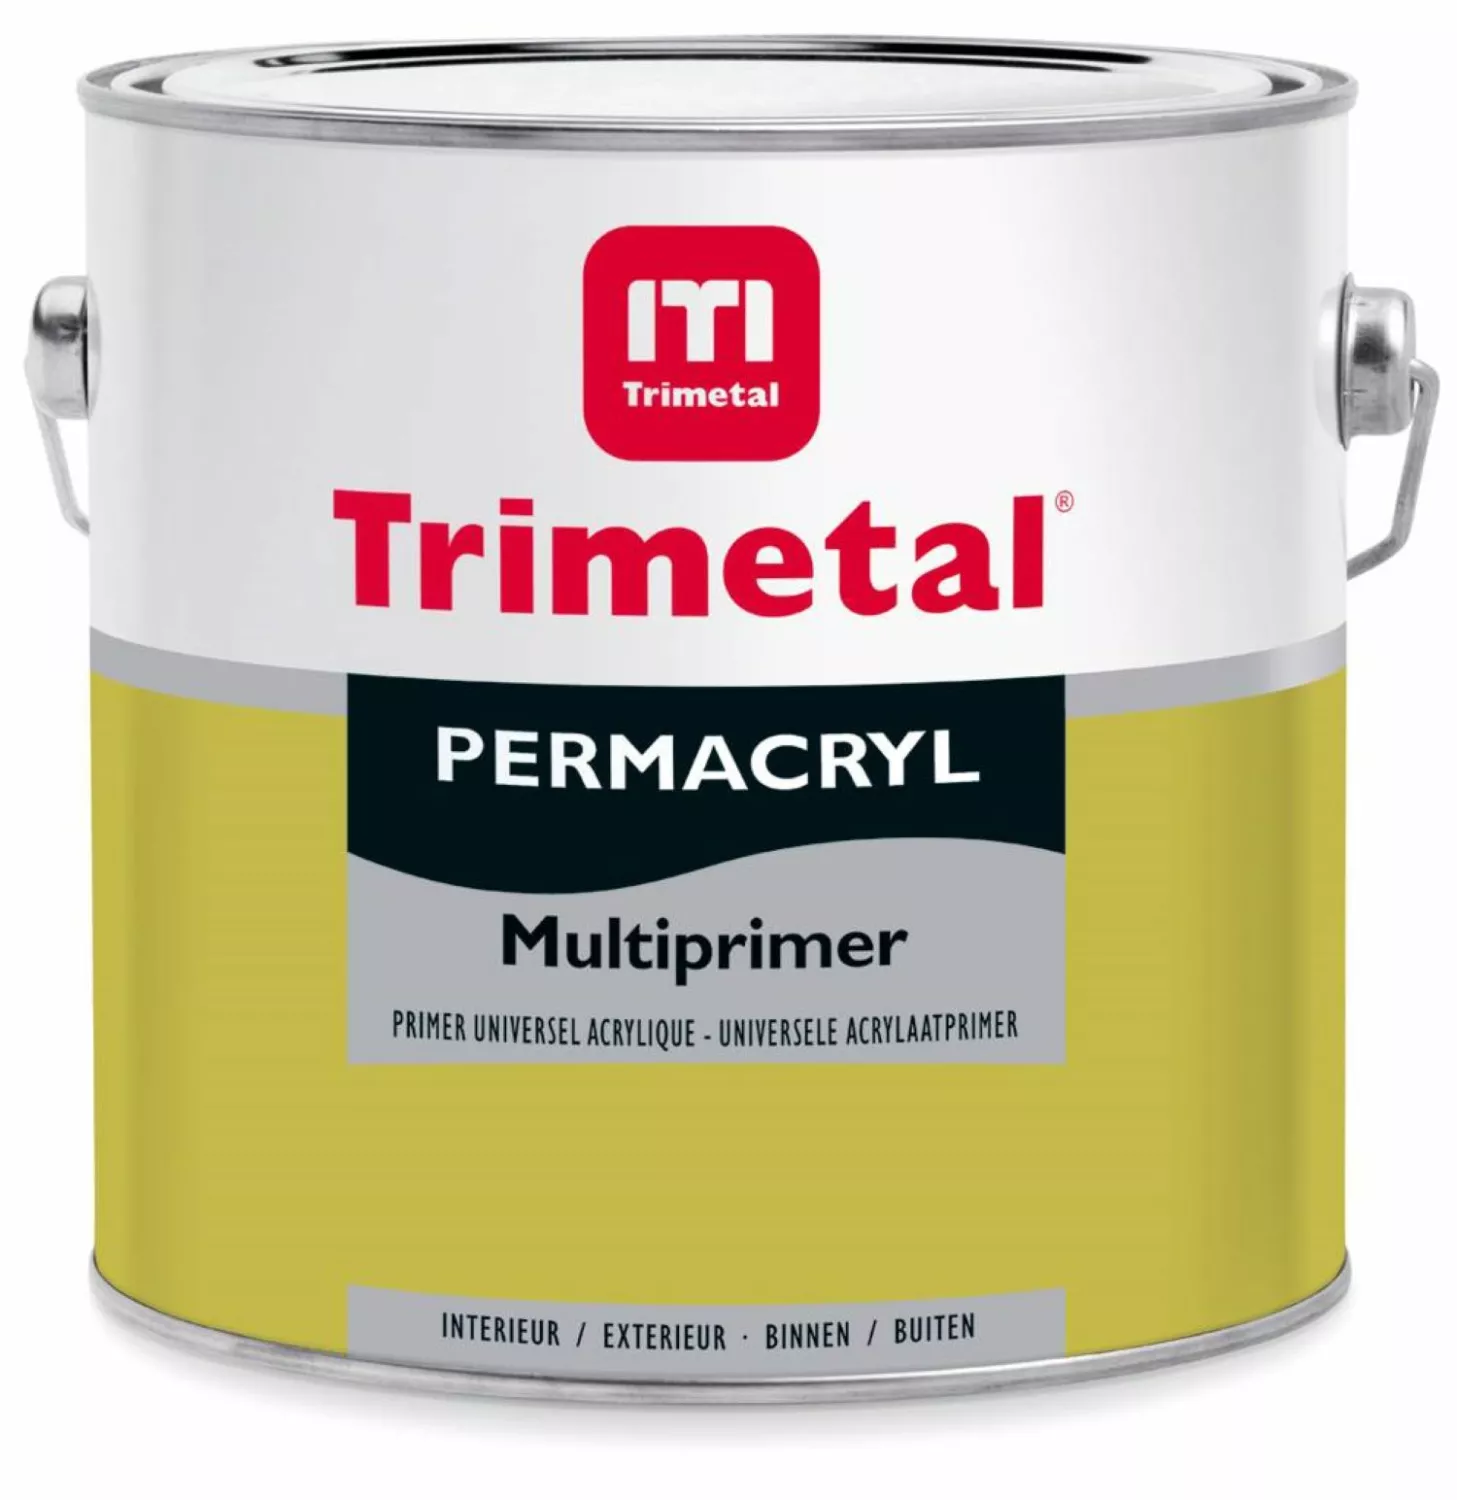 Trimetal Permacryl Multiprimer grondlak - op kleur gemengd - 1L-image